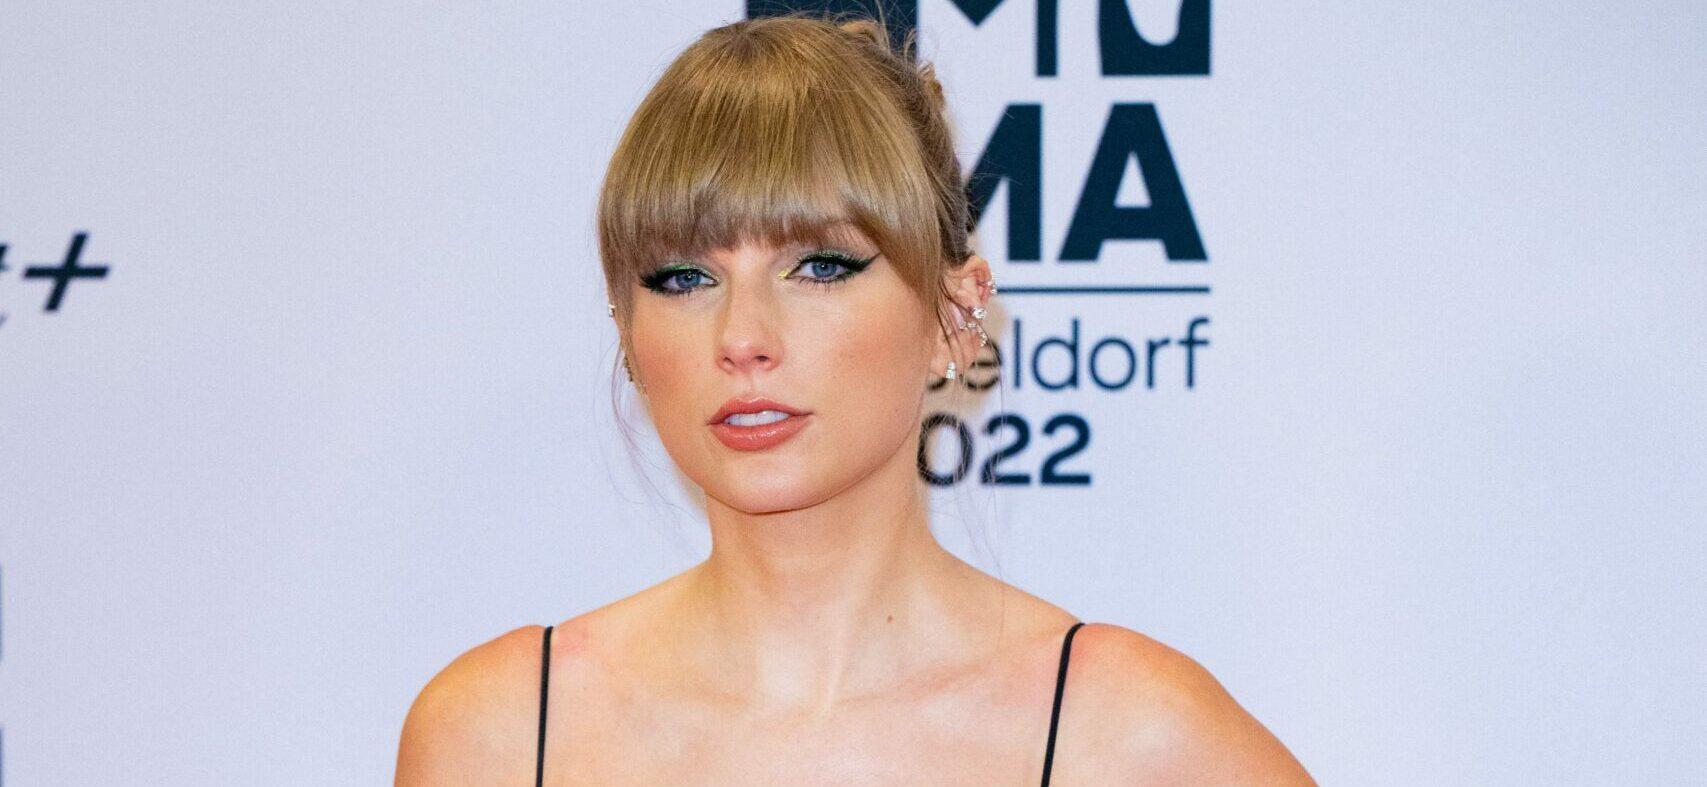 Taylor Swift at the 2022 MTV EMAs